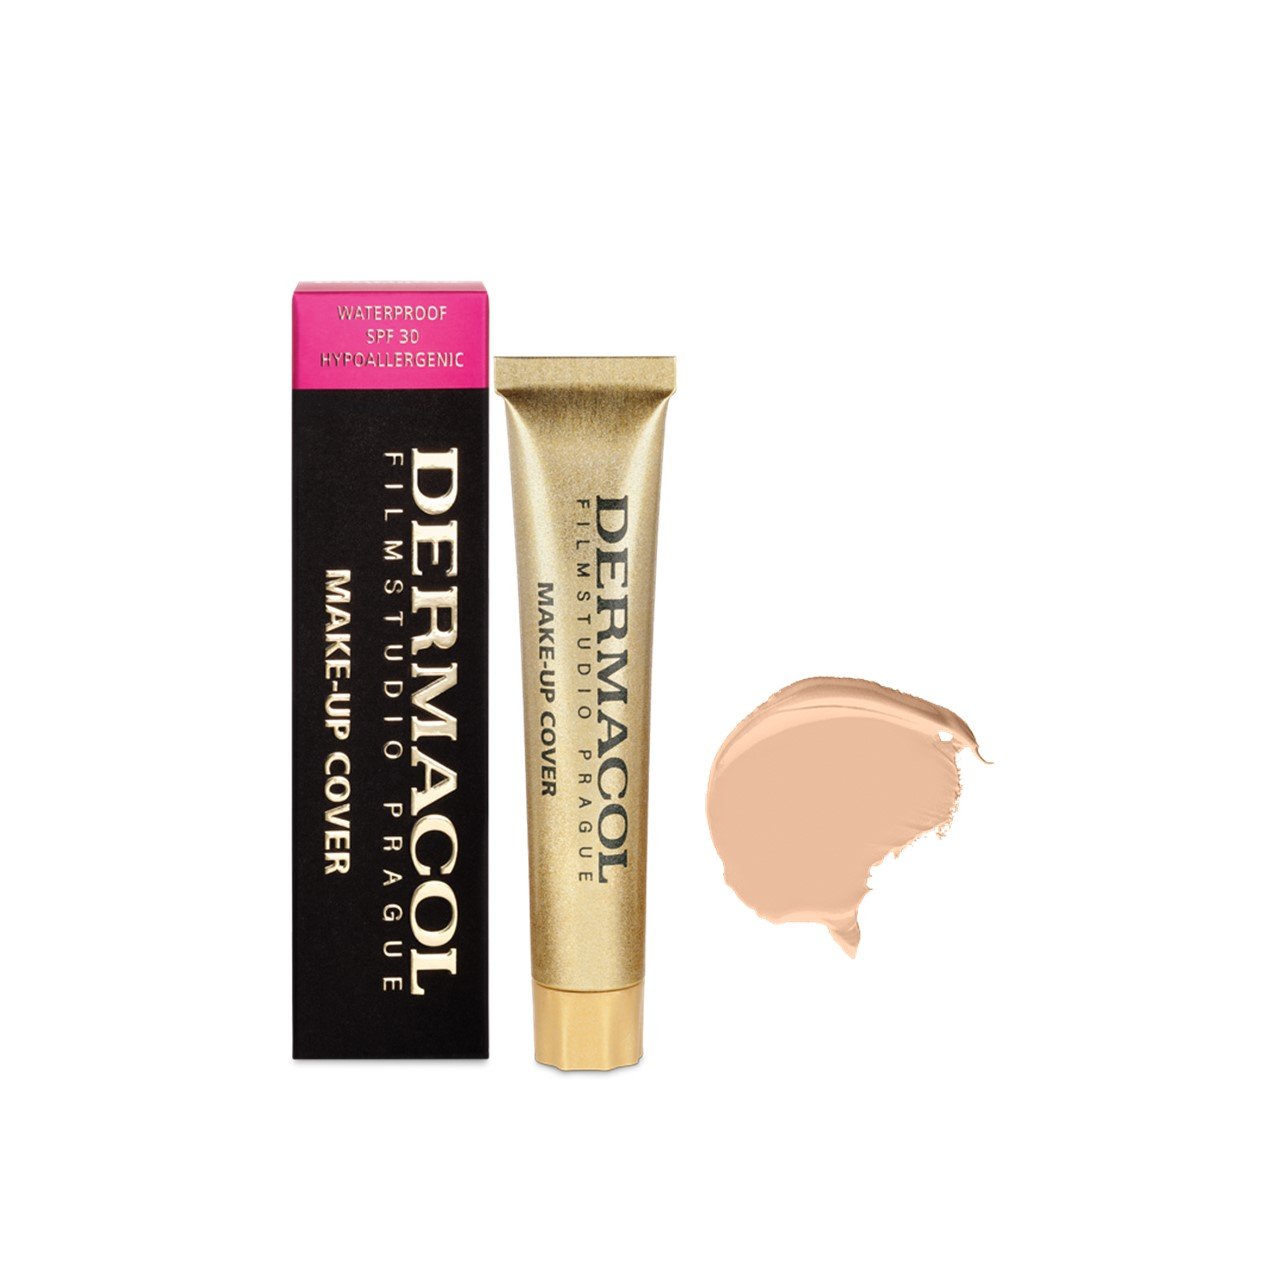 Dermacol Make-Up Cover Foundation SPF30 207 30g (1.06oz)